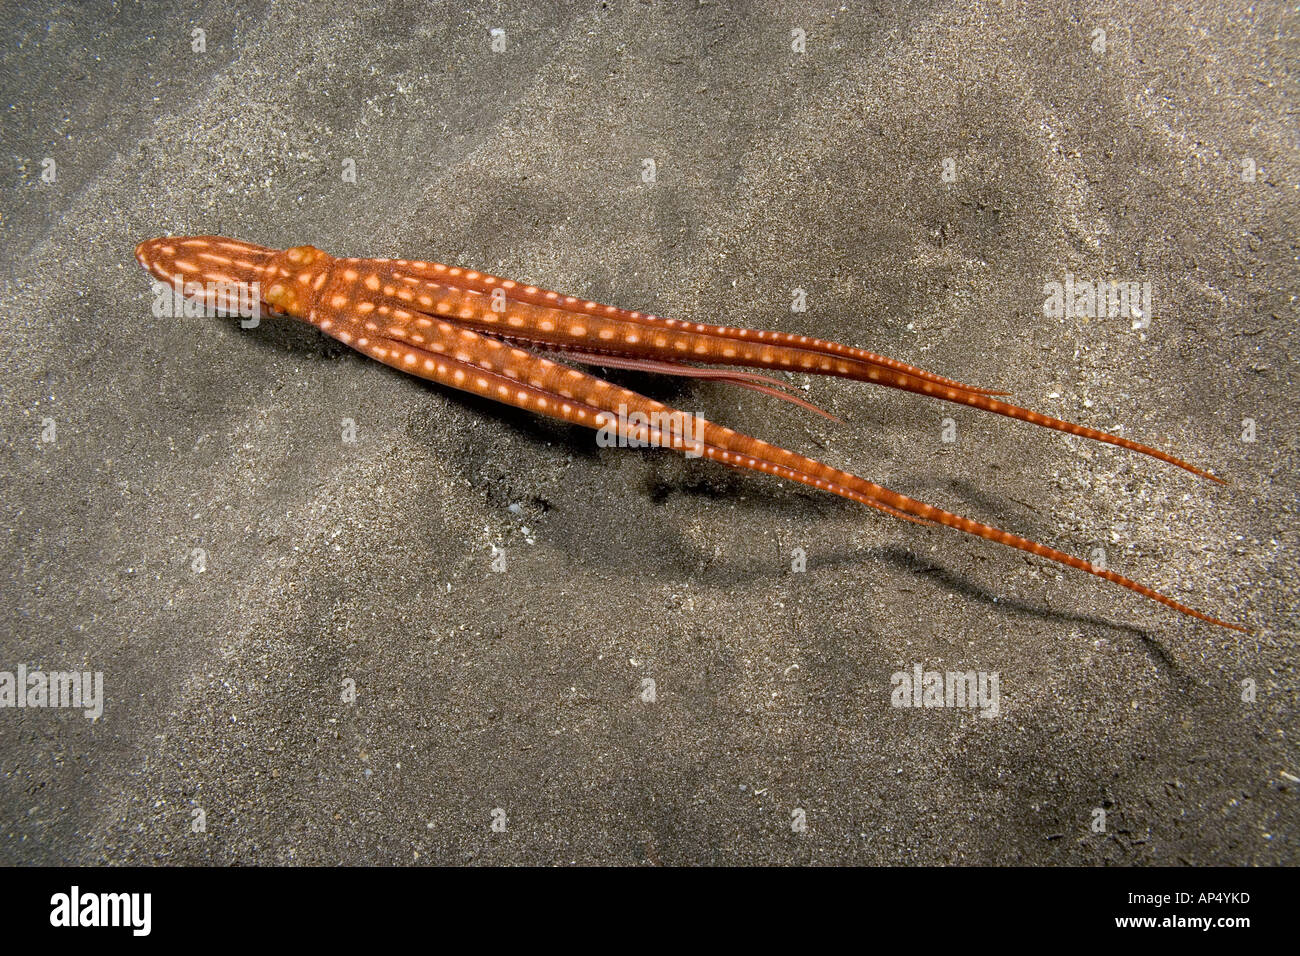 Este ornamentado de natación o de la noche, el pulpo PULPO ornatus, muestra las diferentes longitudes de los tentáculos, Hawai. Foto de stock